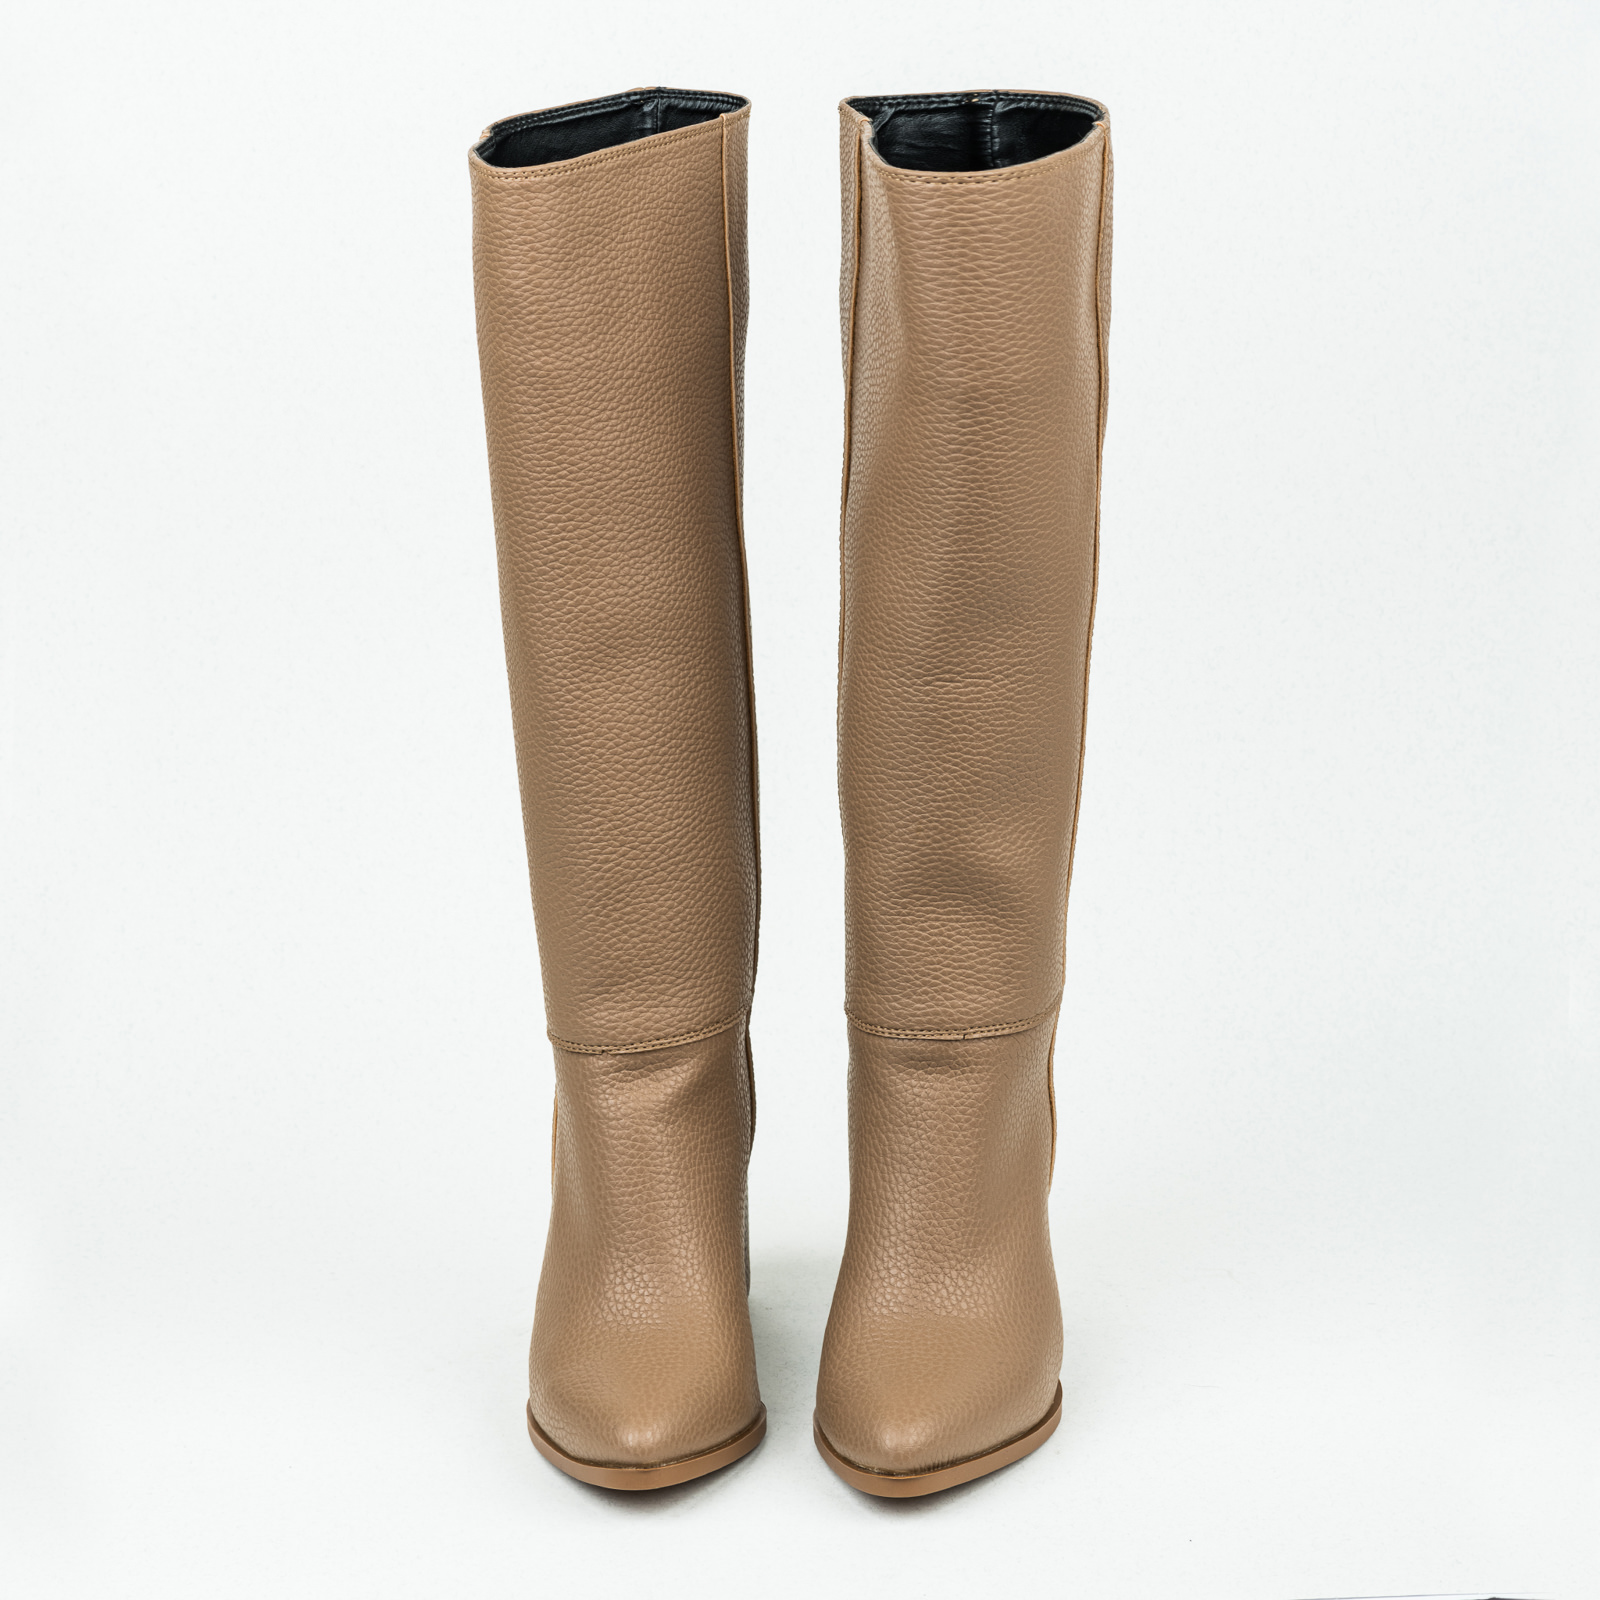 Women boots B099 - BEIGE